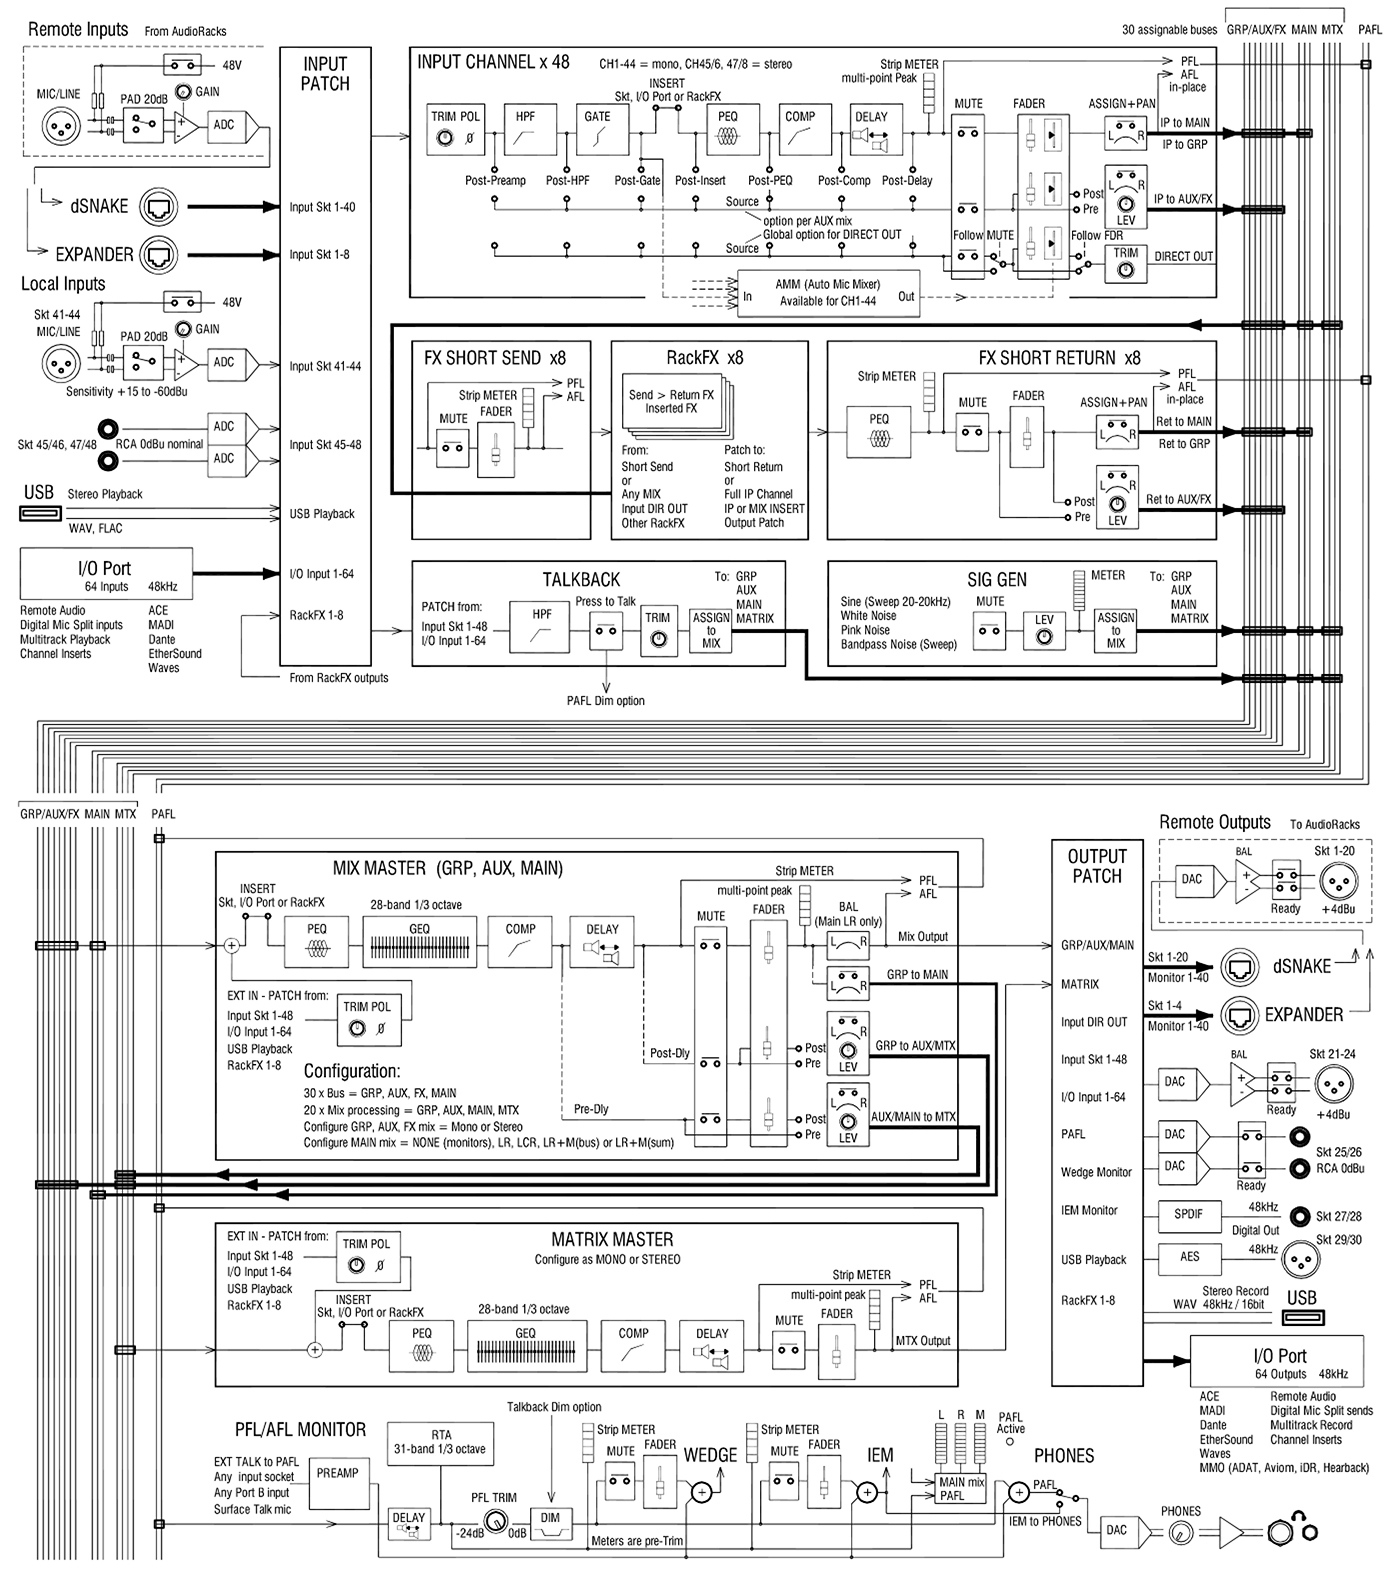 Схема маршрутизации сигнала ALLEN & HEATH GLD-80